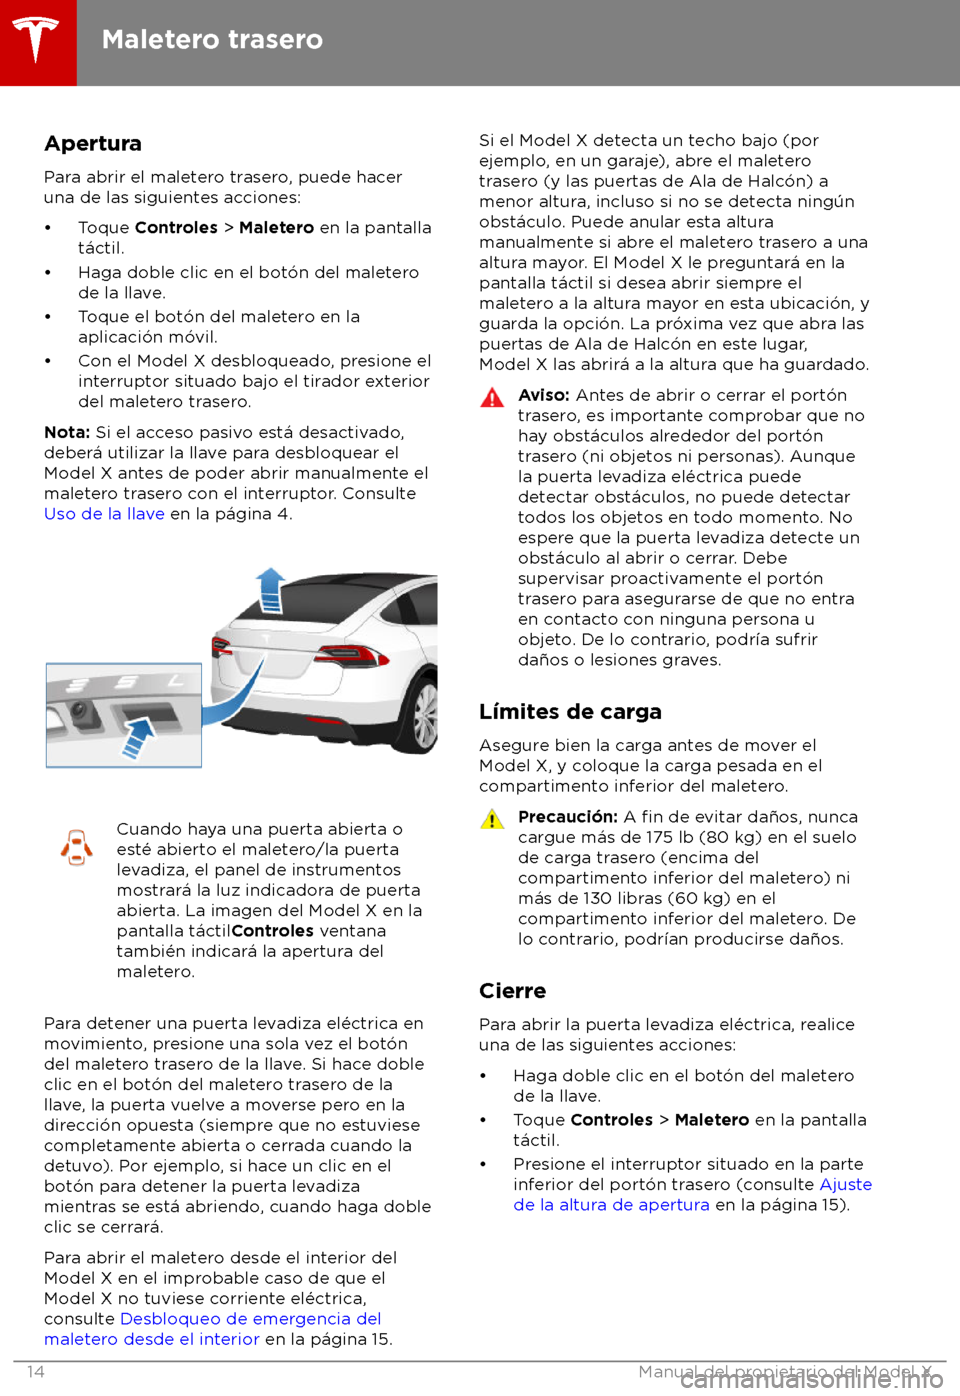 TESLA MODEL X 2018  Manual del propietario (in Spanish) Apertura
P ara abrir el maletero trasero, puede hacer
una de las siguientes acciones:
